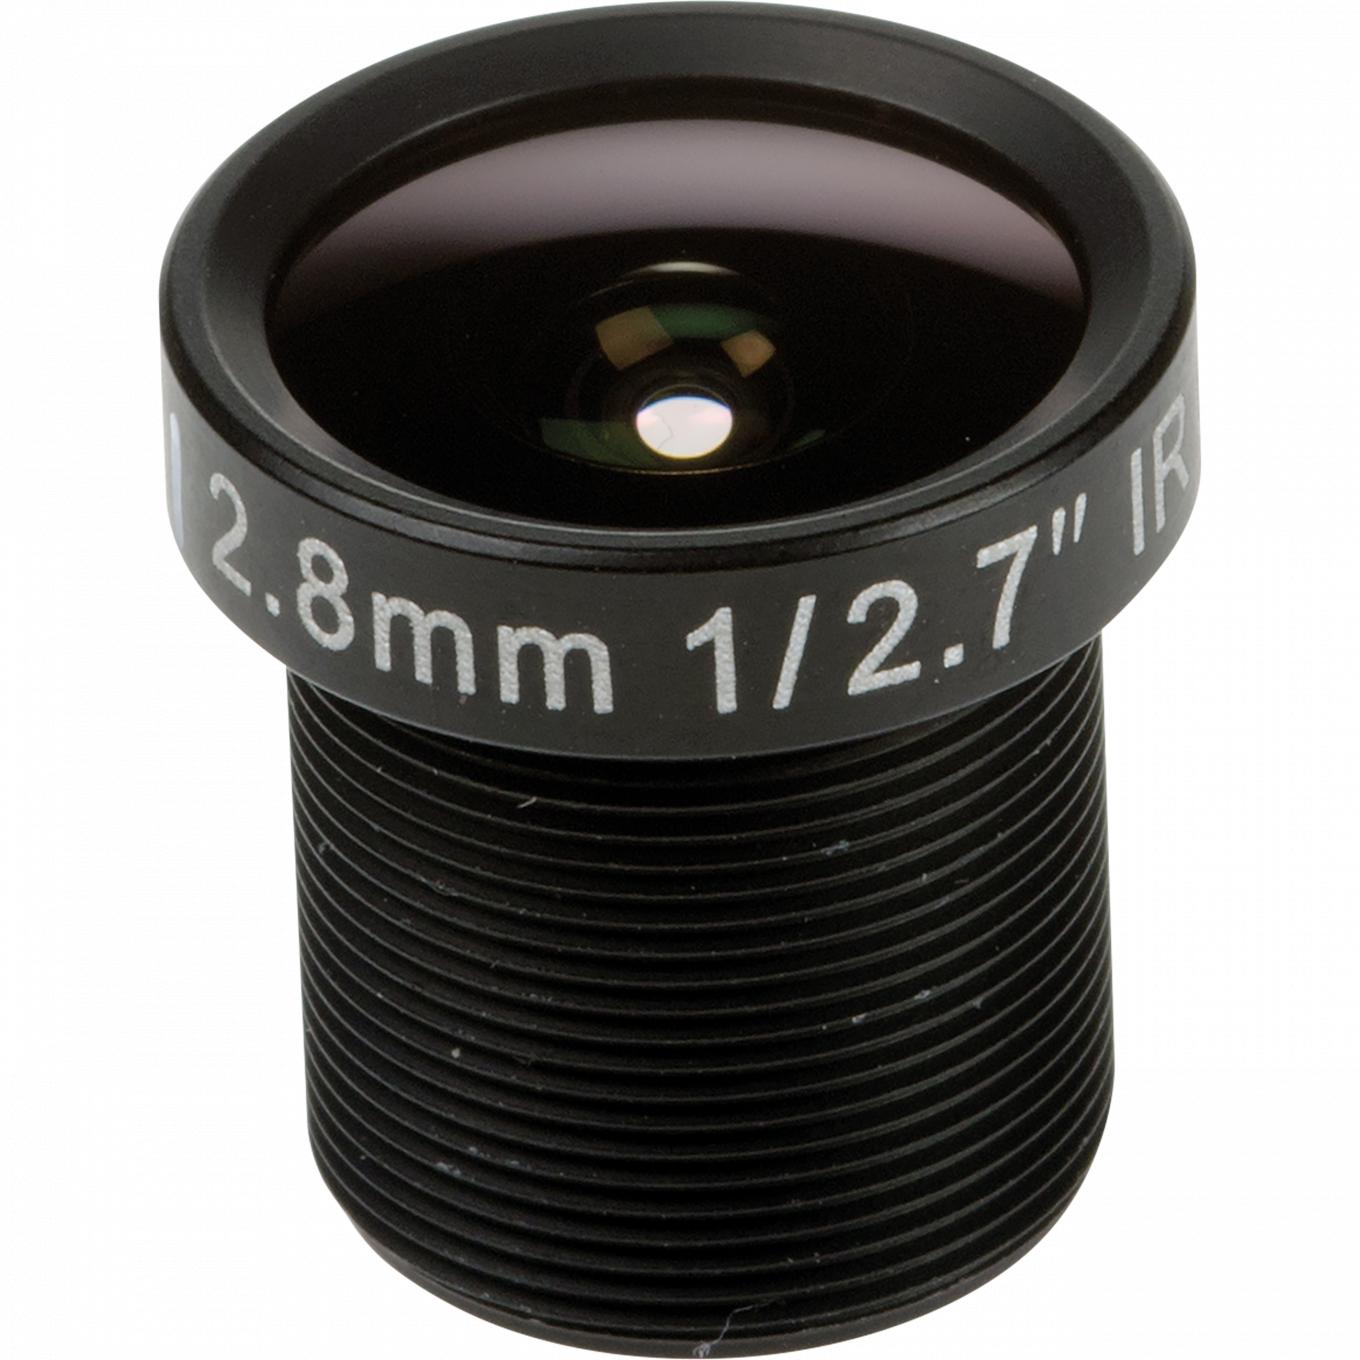 Lens M12 2.8 mm F1.6, von vorne